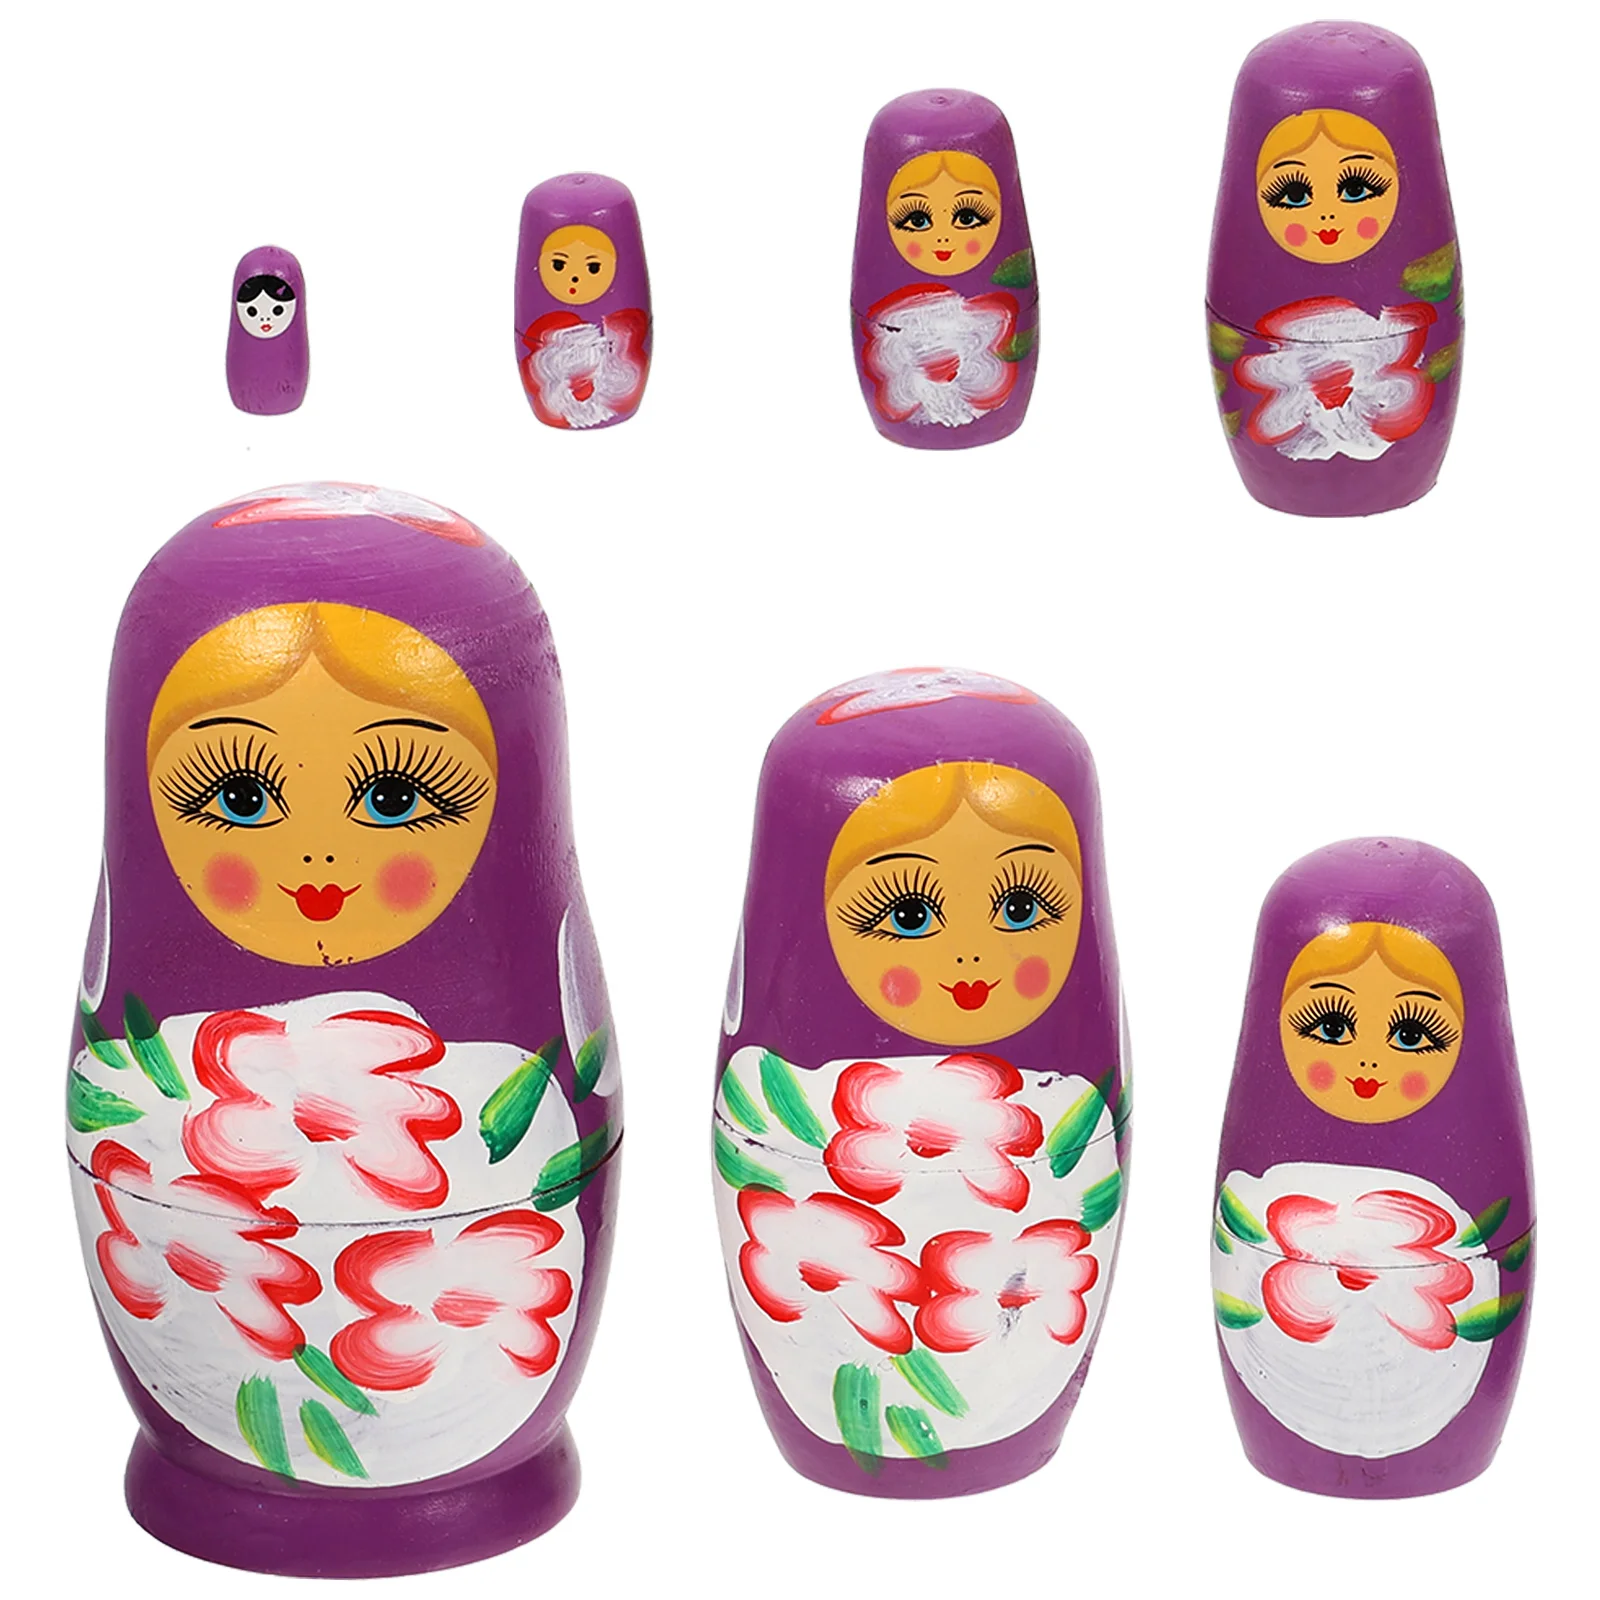 

7-уровневая Матрешка, Детские уличные игровые наборы для детей, набор для рукоделия, деревянные куклы, русский язык